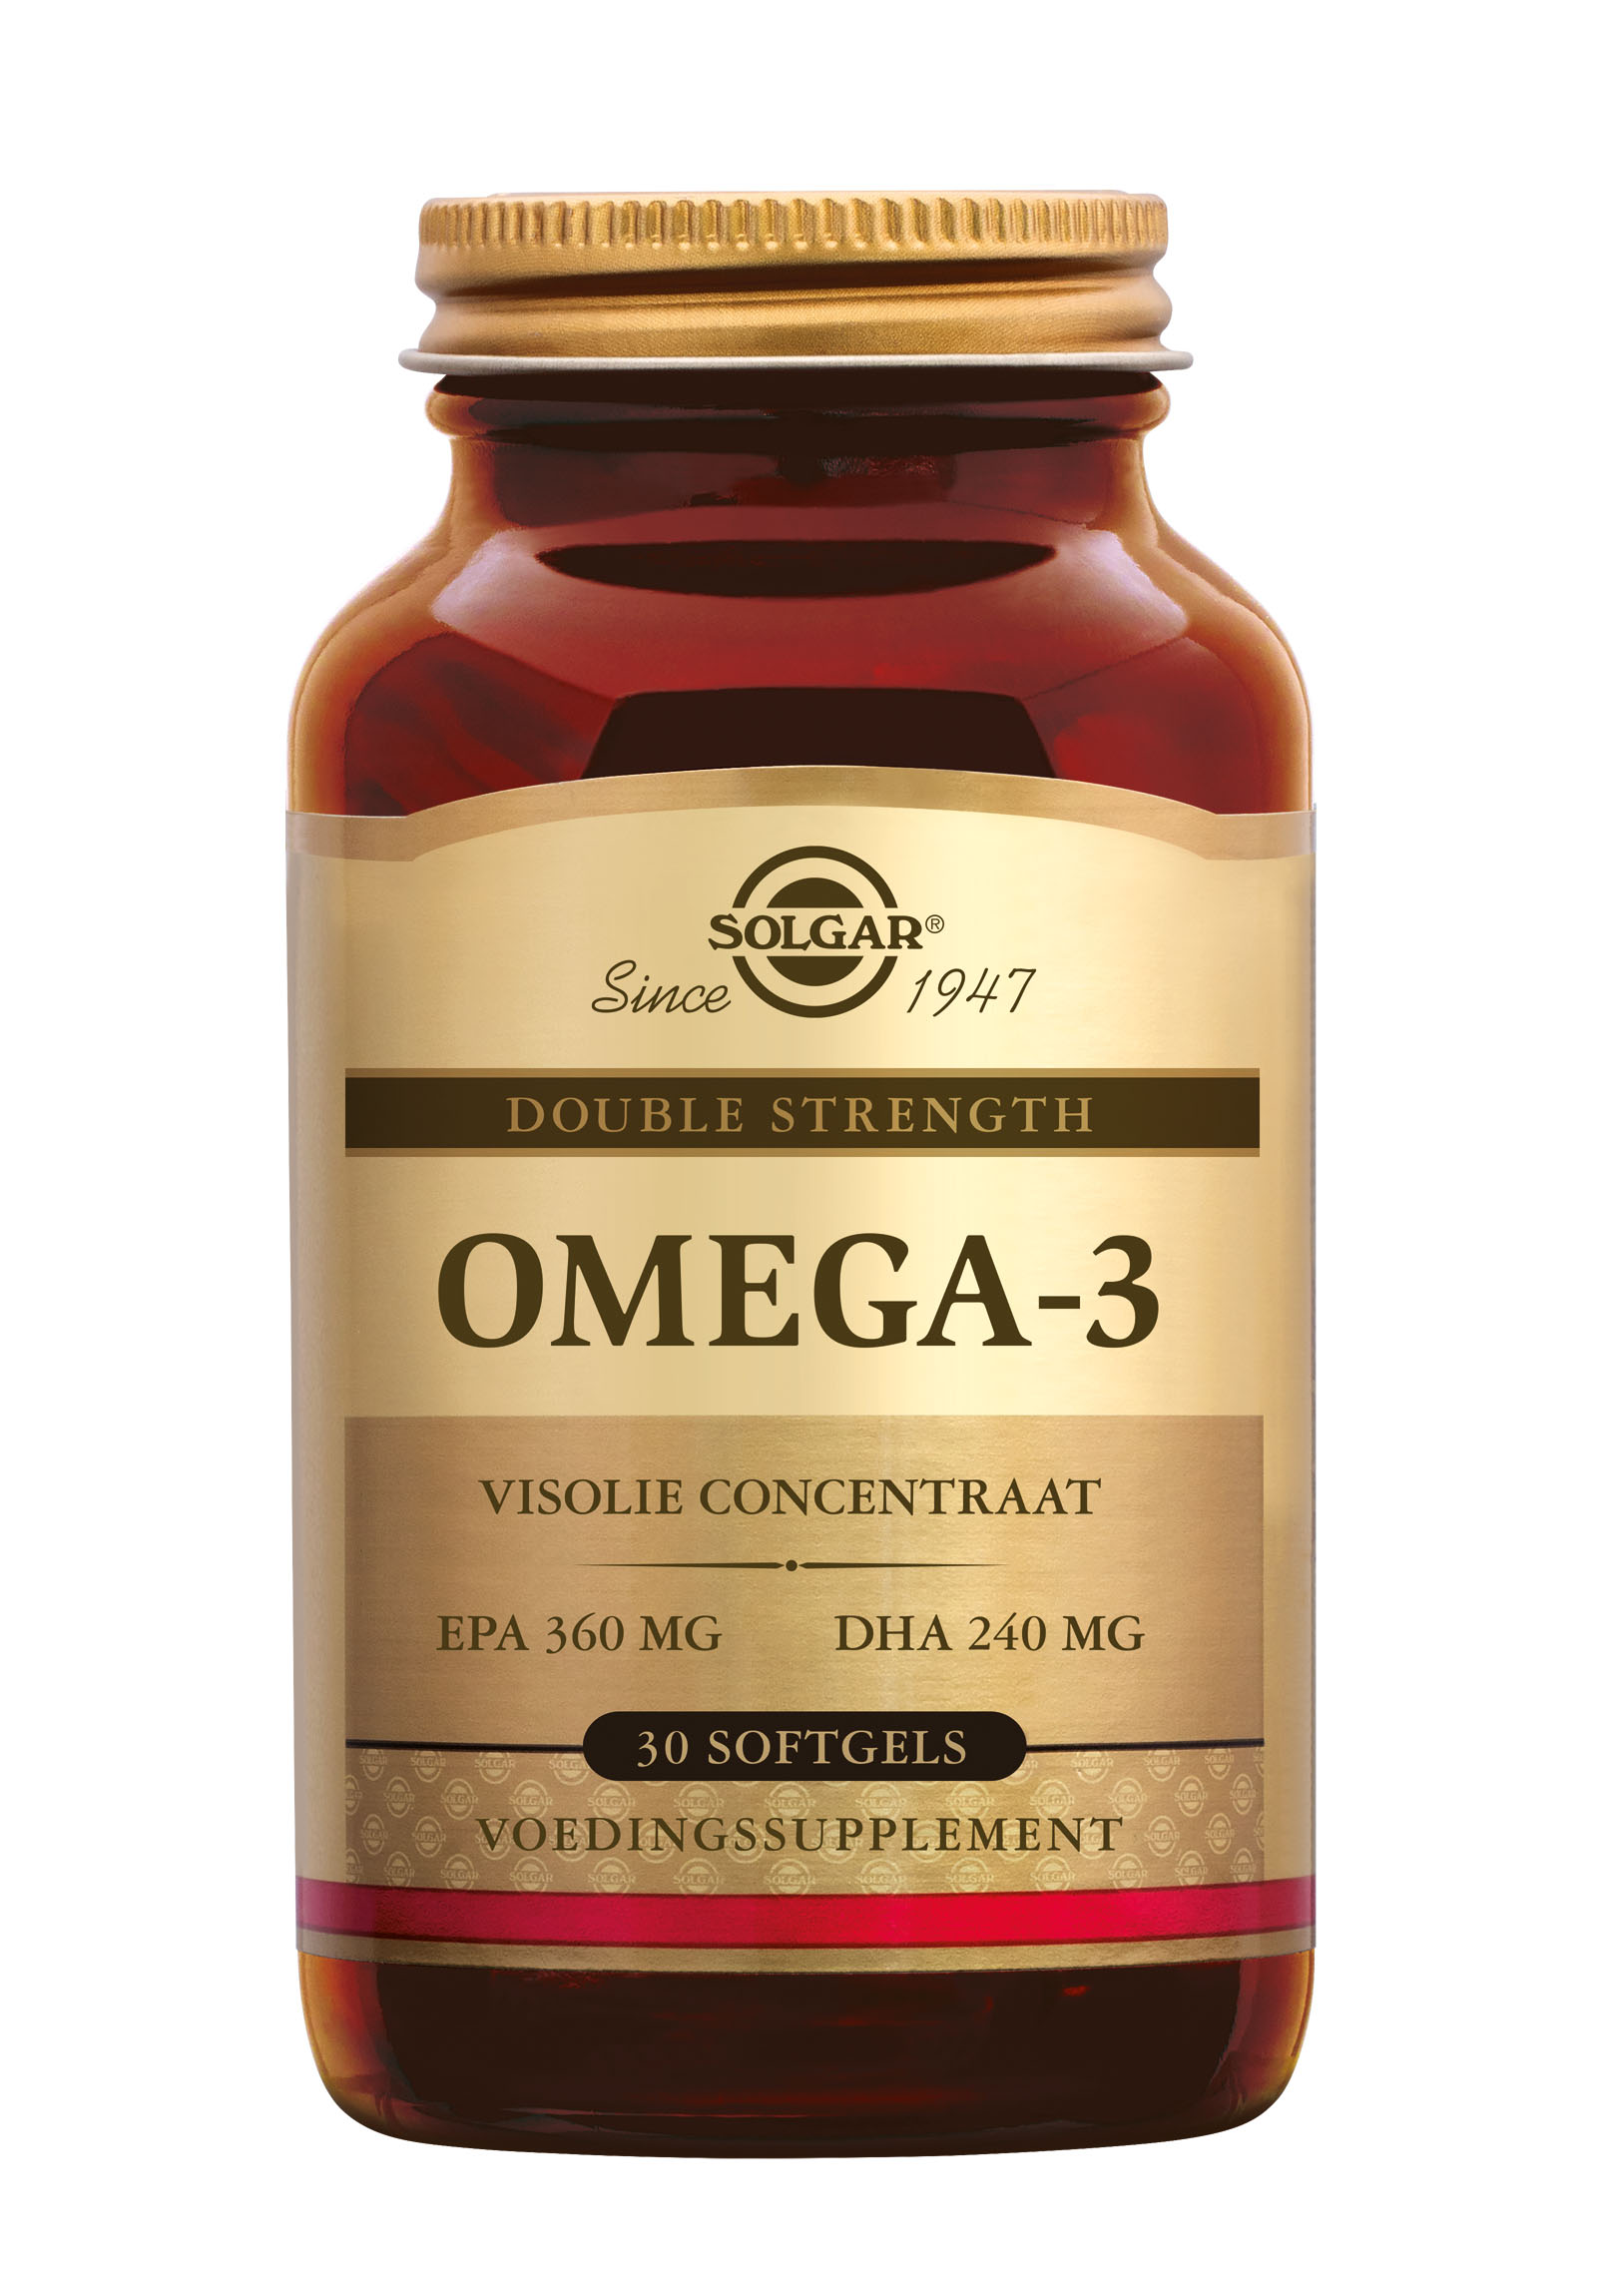 Solgar Omega-3 Double Strength (30 stuks)